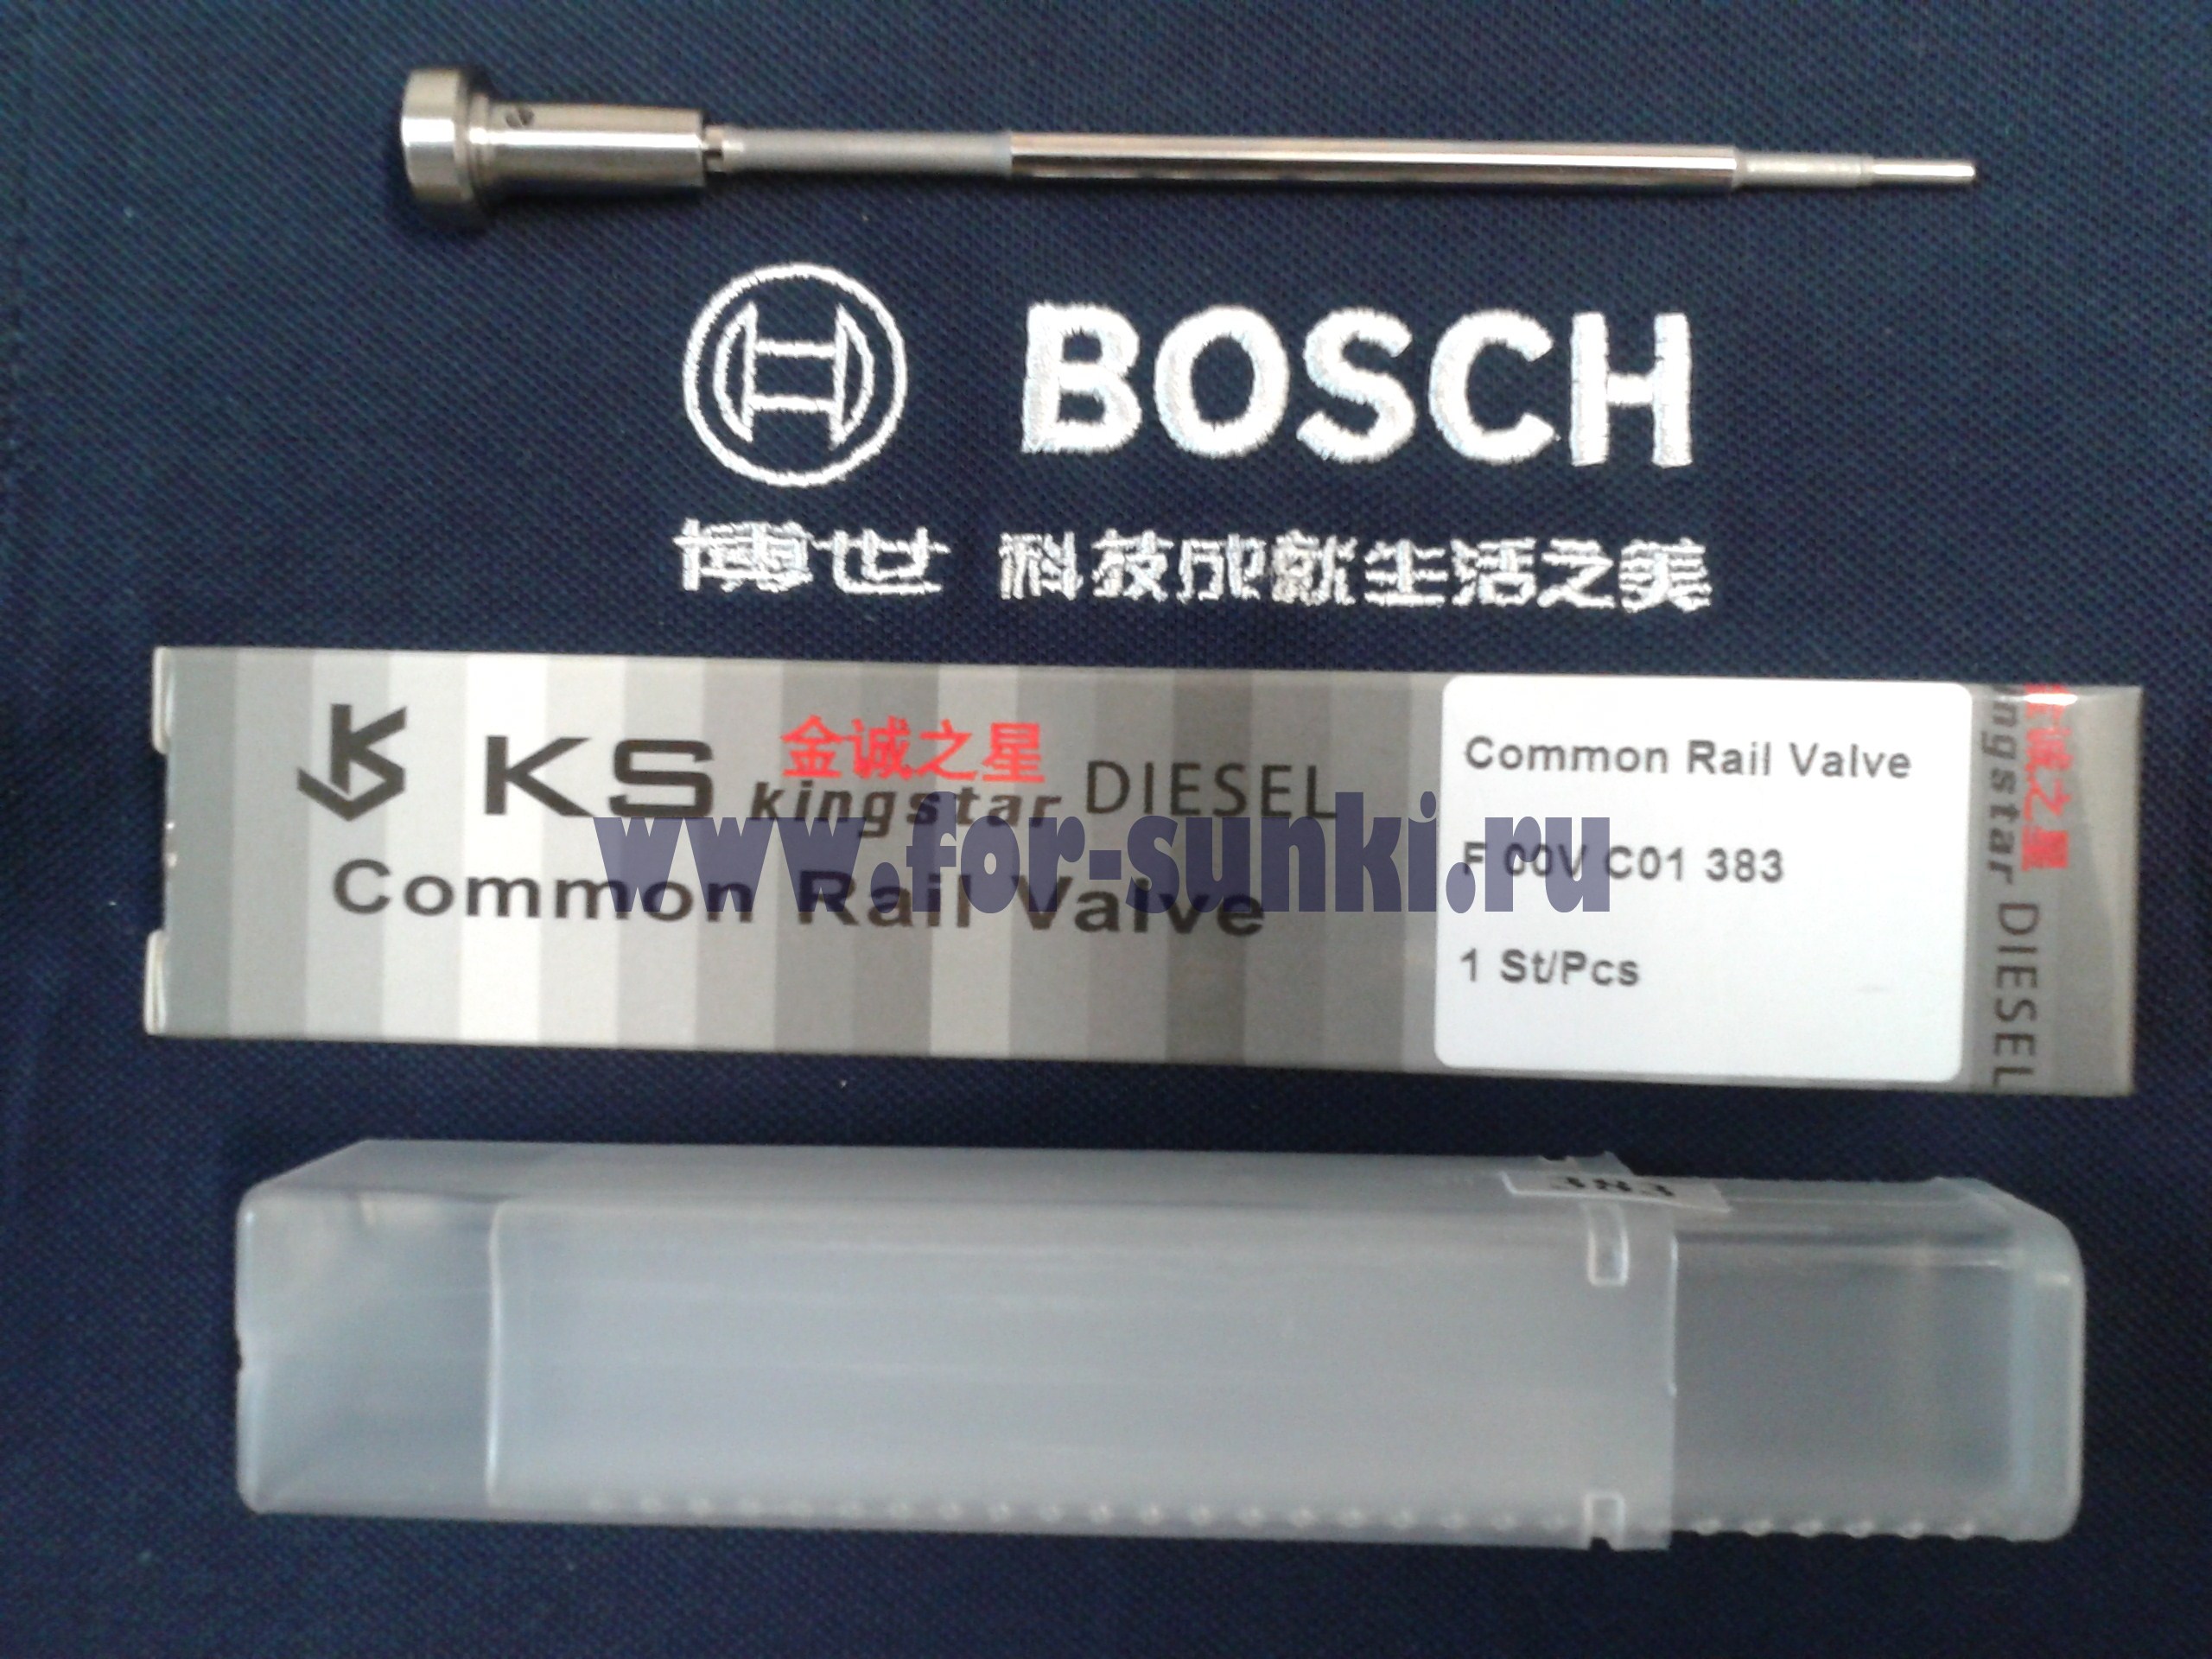 Купить клапан форсунки F00VC01383 Bosch на газель бизнес Cummins 2.8